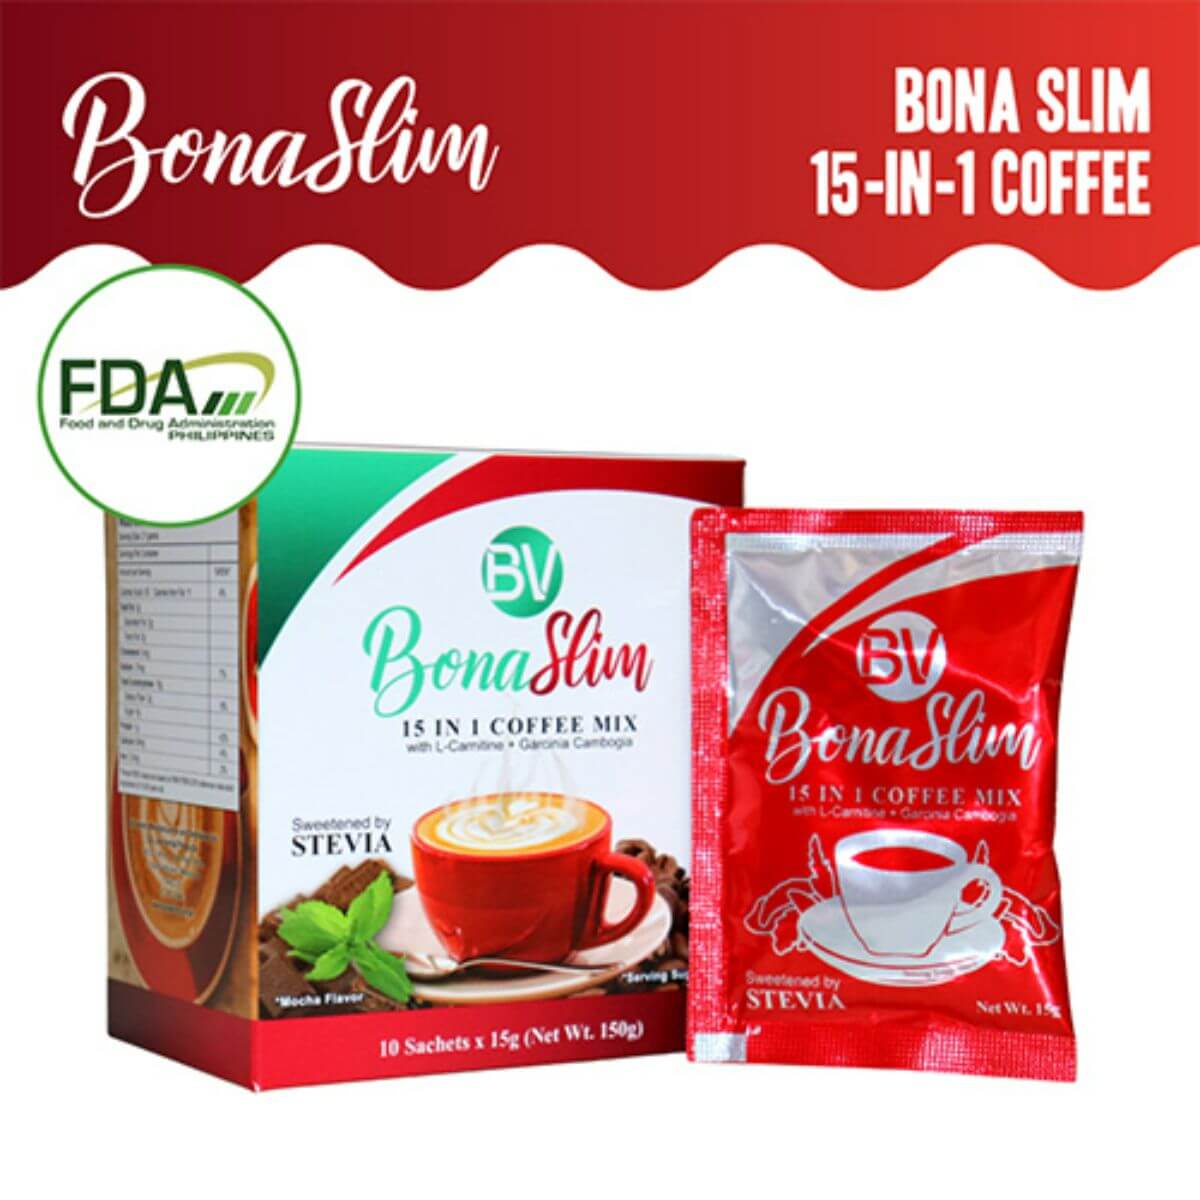 5 Important Ingredients in Bona Vita’s Slimming Coffee